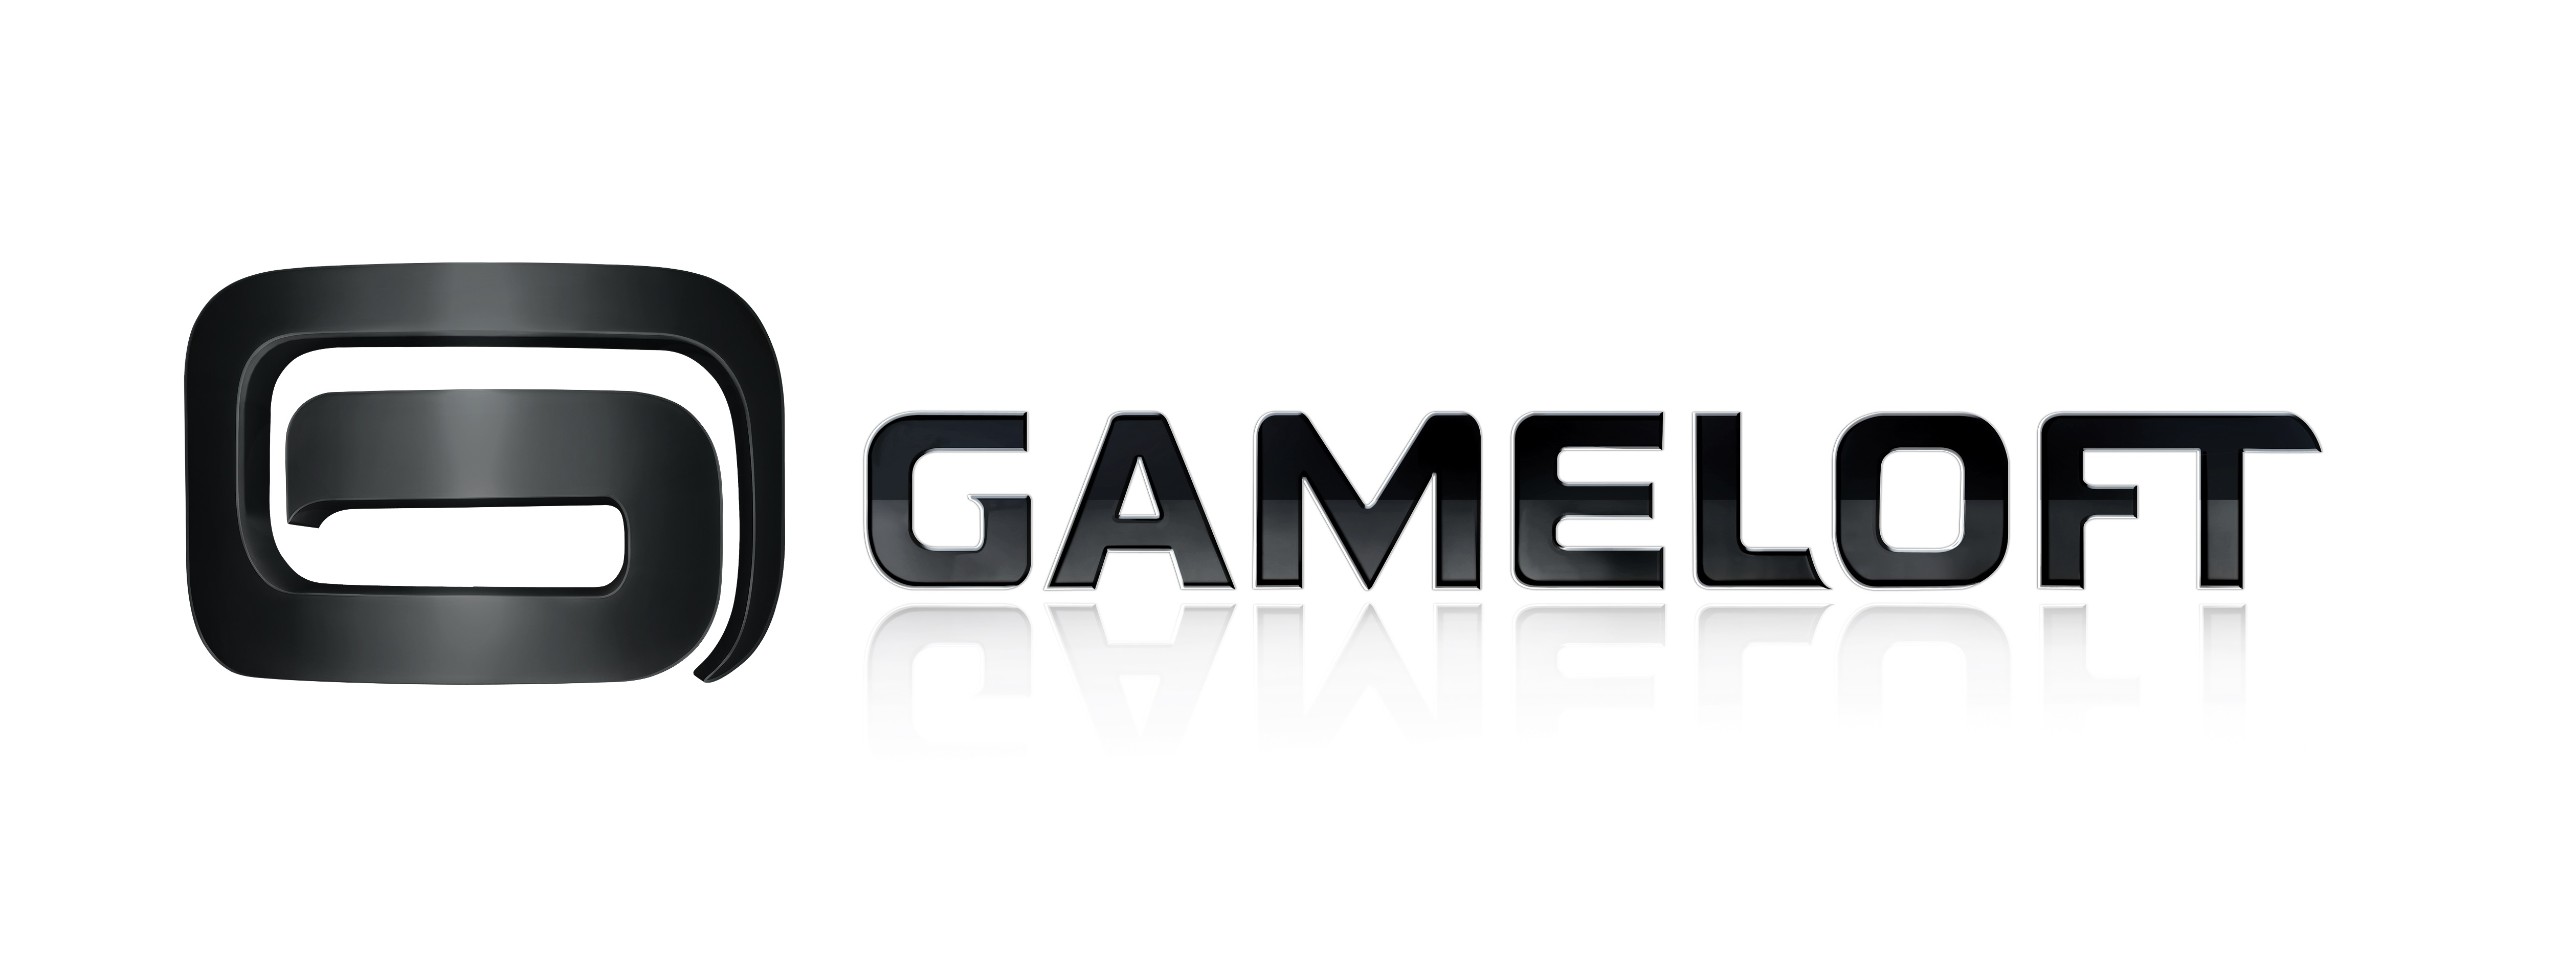 Juegos de Gameloft a la venta a $0.99 en Play Store y Amazon Appstore